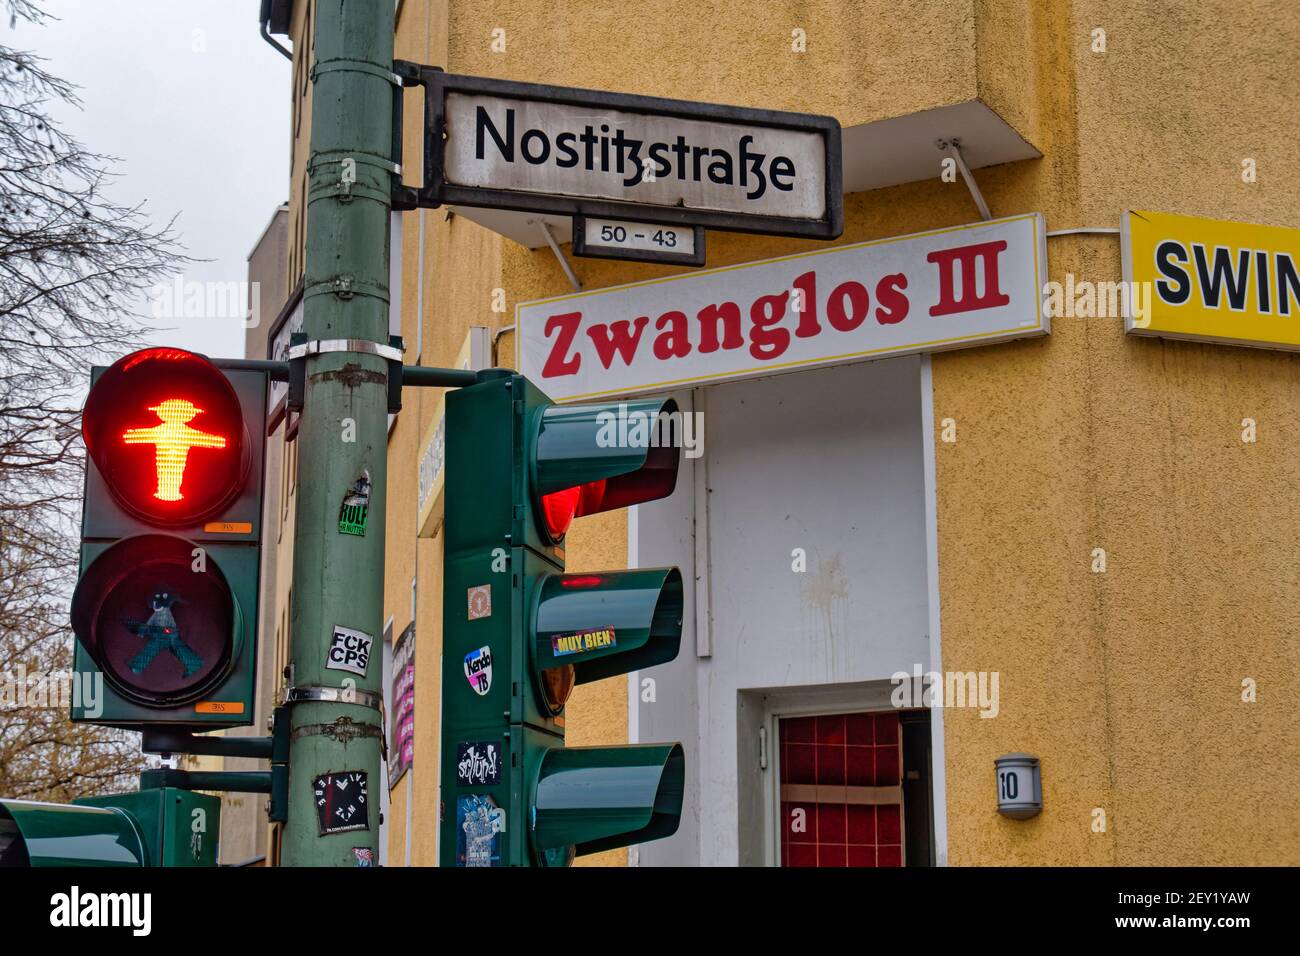 Swinger Club Zwanglos III , geschlossen im Corona Lockdown, Kreuzberg, rote Ampel, Symbolbild, Berlin Banque D'Images